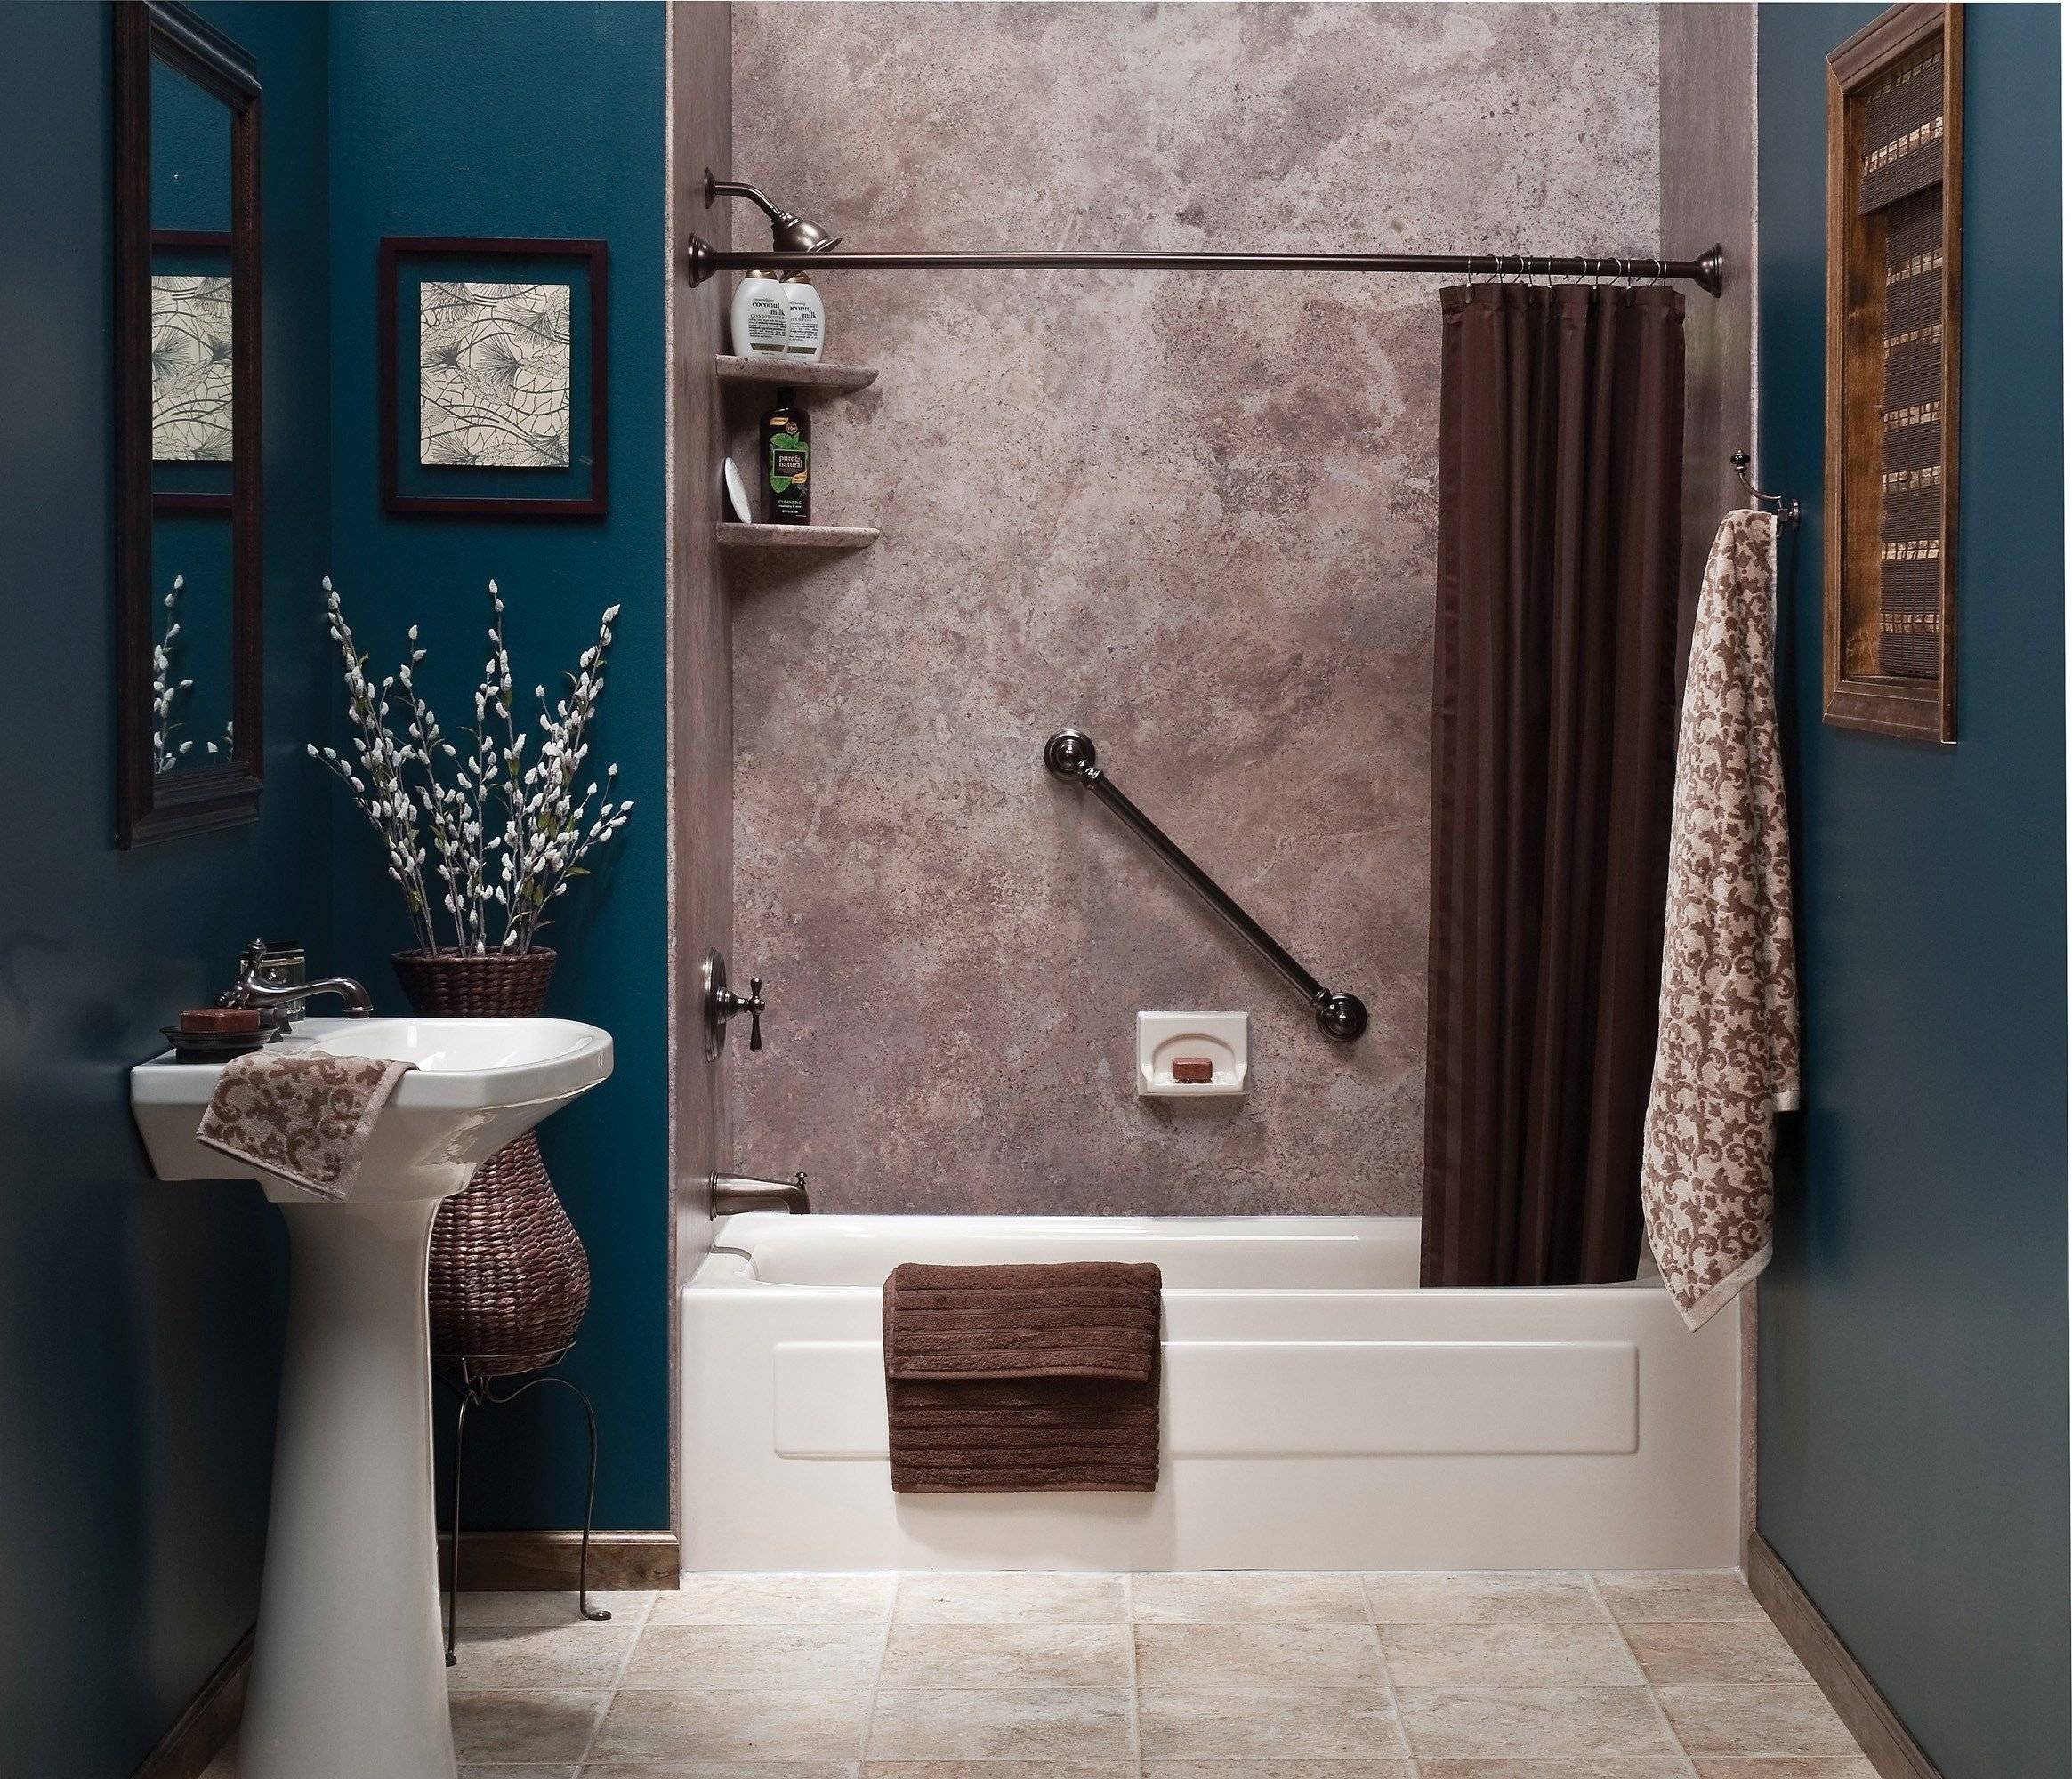 Что можно использовать для стен в ванной вместо плитки — альтернативные варианты (фото, видео)